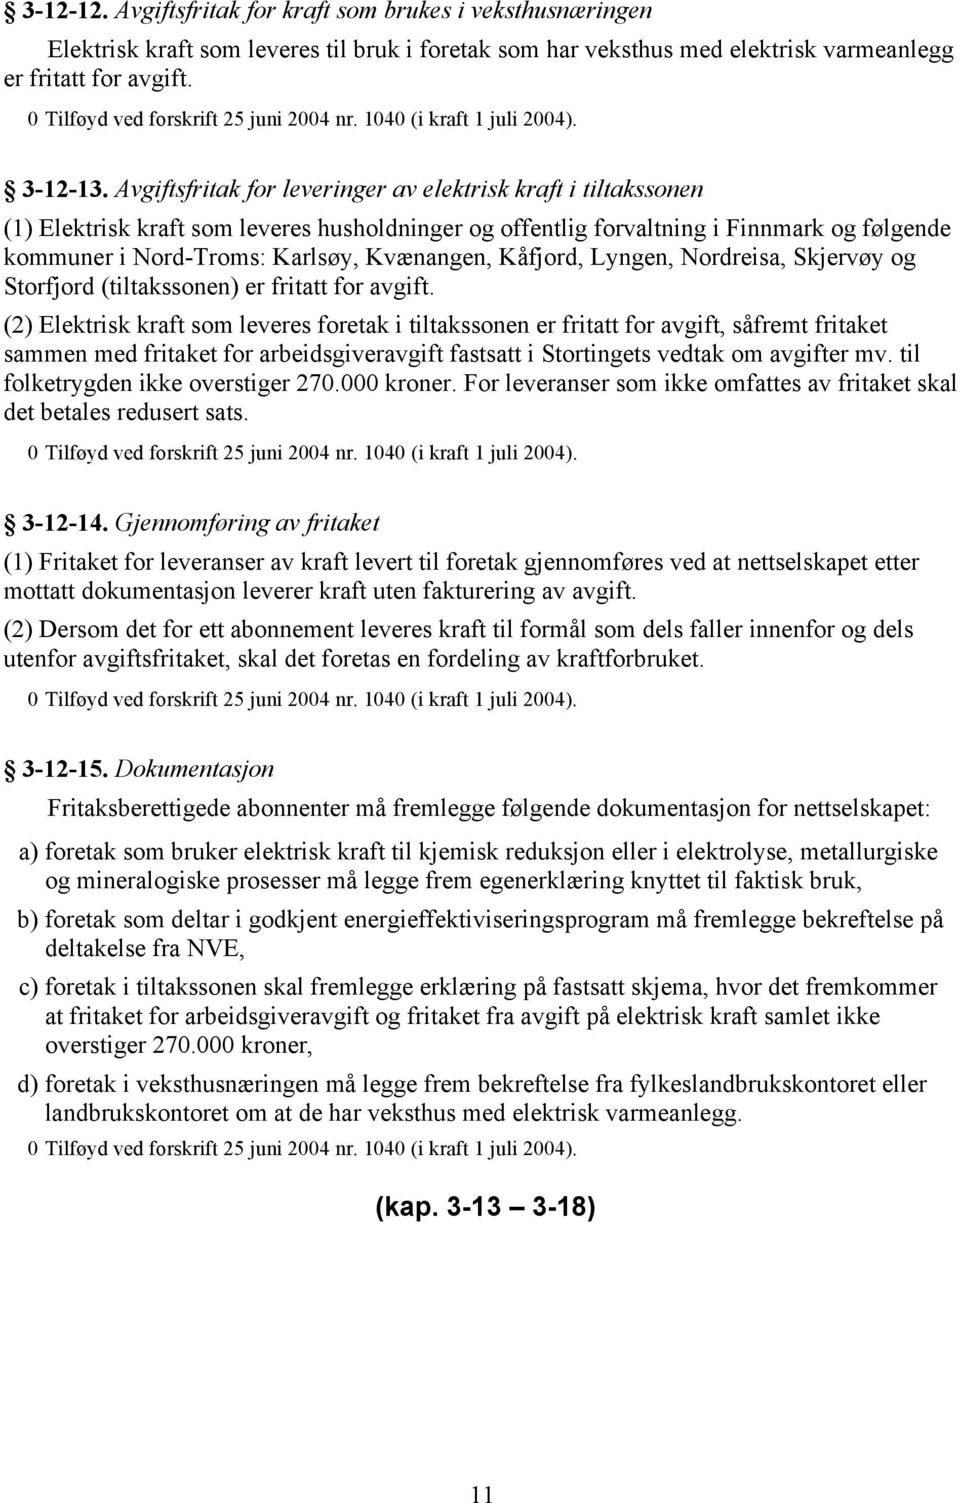 Avgiftsfritak for leveringer av elektrisk kraft i tiltakssonen (1) Elektrisk kraft som leveres husholdninger og offentlig forvaltning i Finnmark og følgende kommuner i Nord-Troms: Karlsøy, Kvænangen,